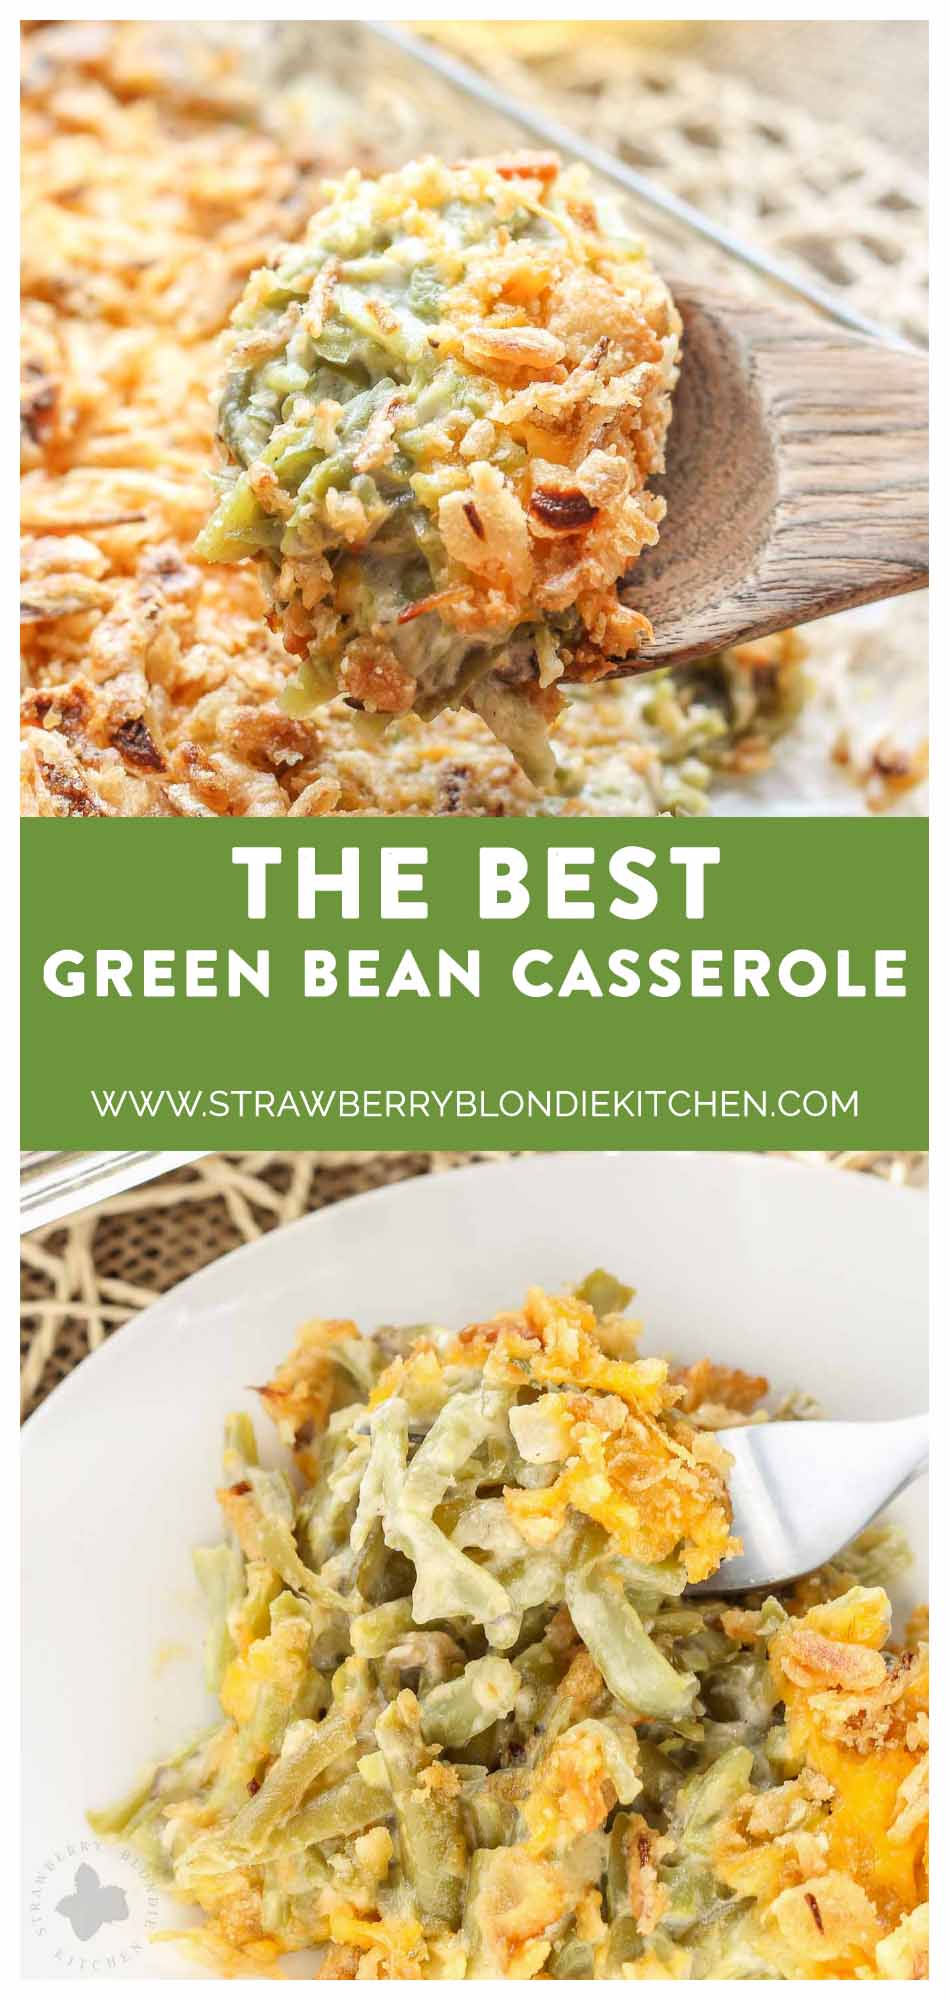 The BEST Green Bean Casserole - Strawberry Blondie Kitchen